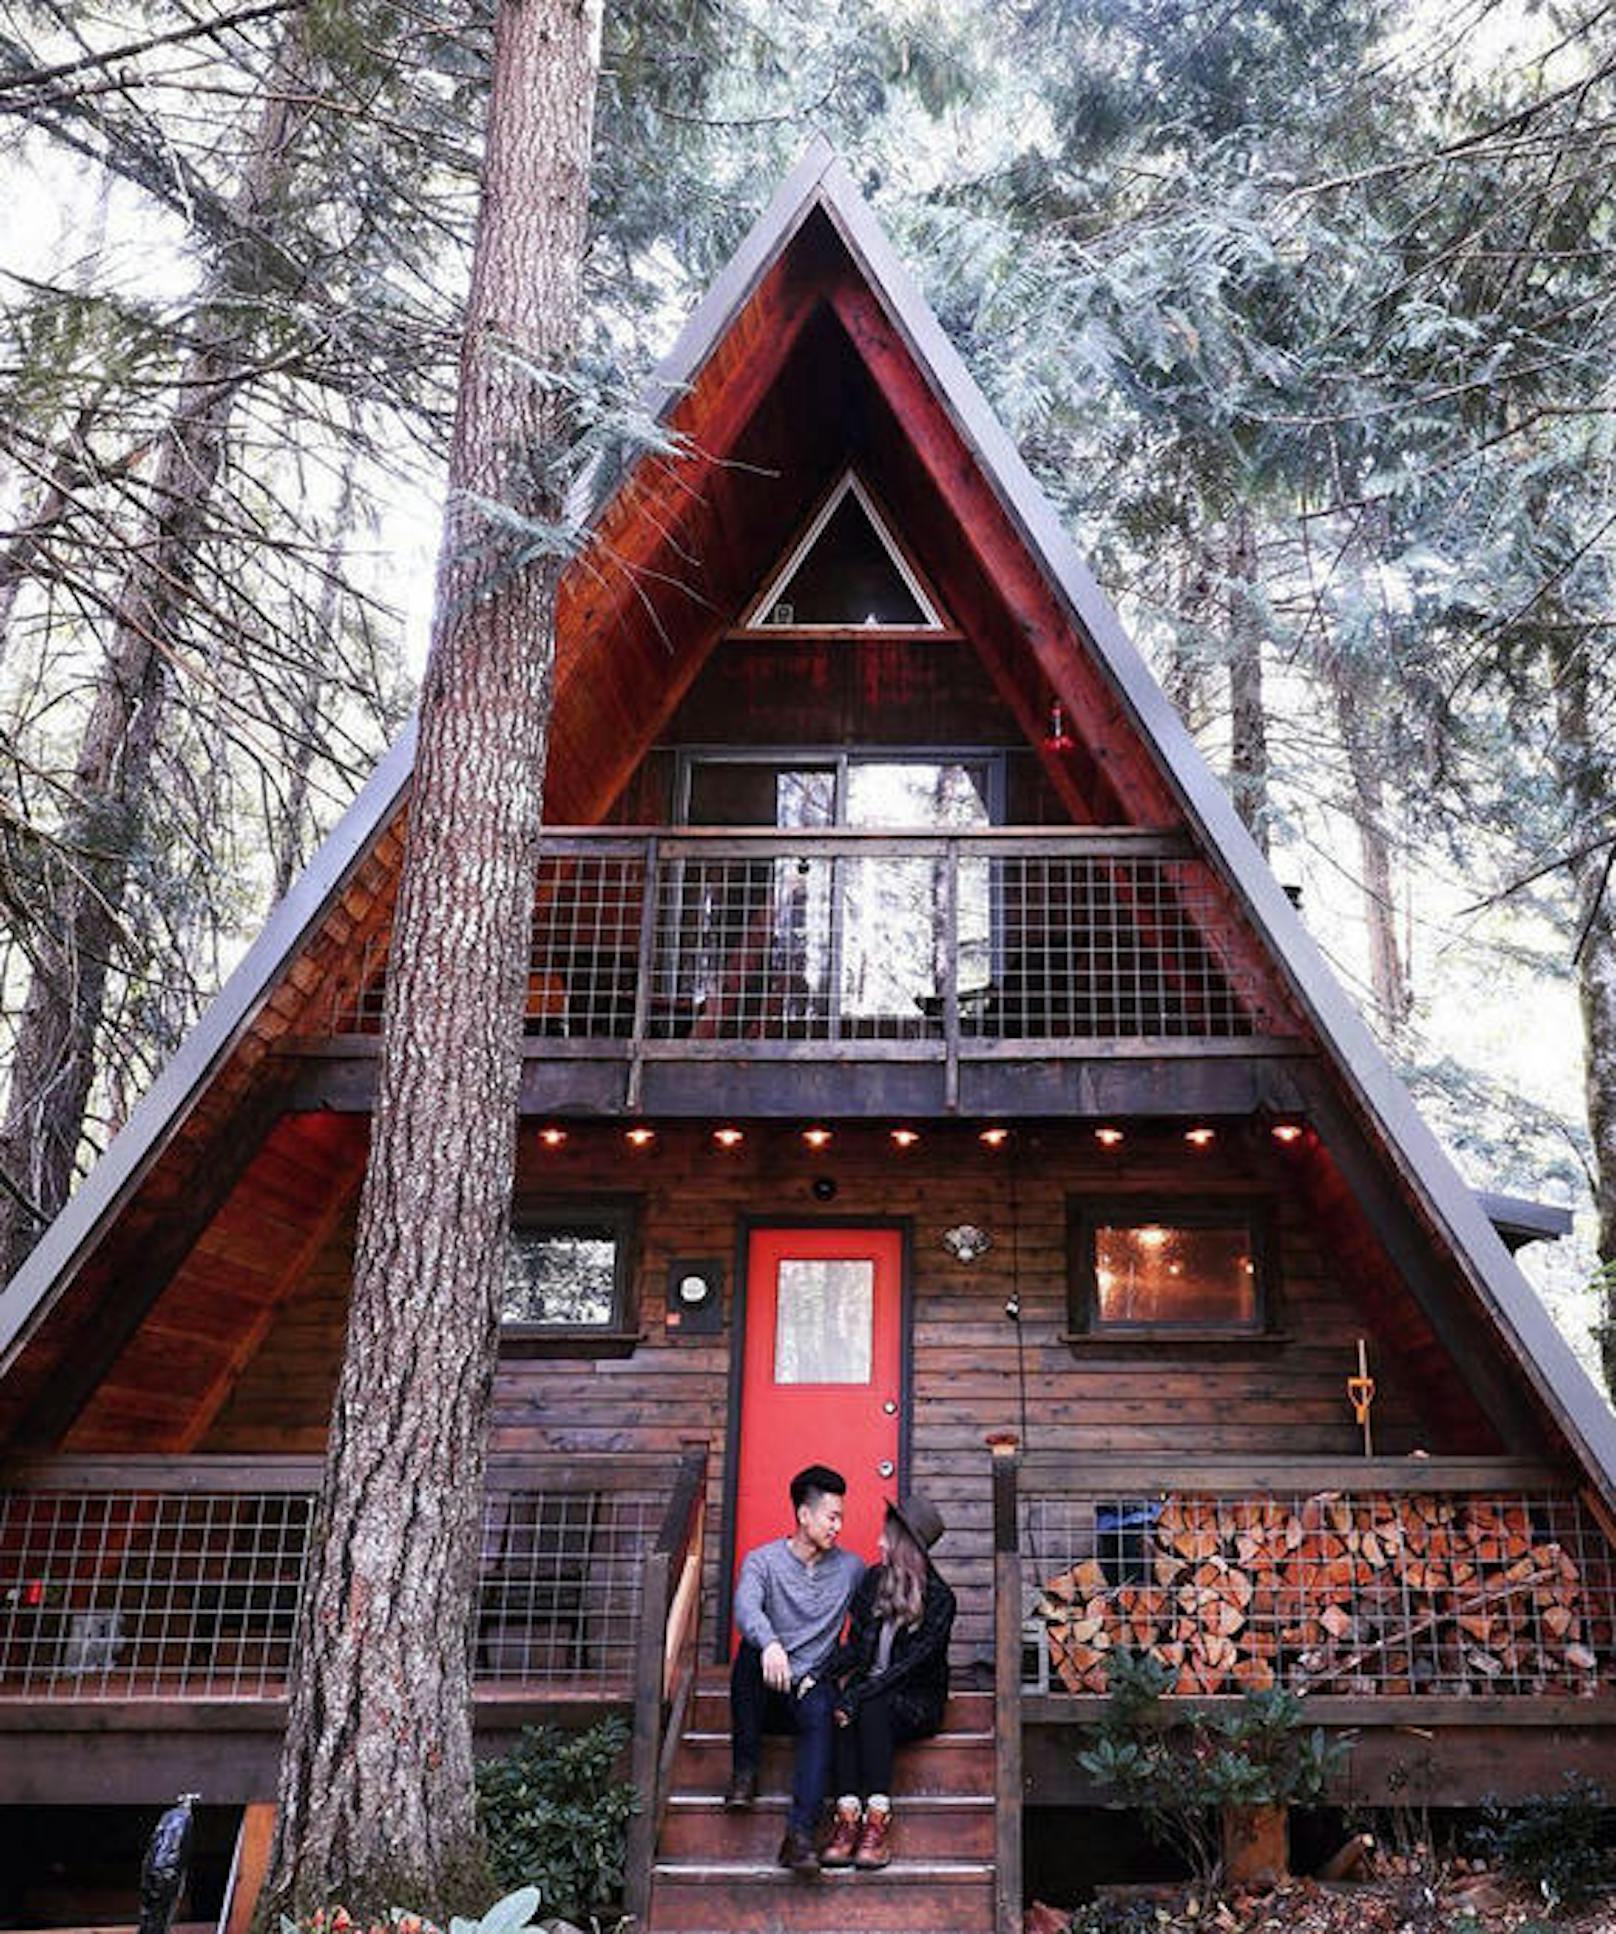 <b>Platz 2: Ryans Hütte, Gifford Pinchot National Forest, Washington</b>
Die "Little Owl Cabin" des Gastgebers Ryan liegt mitten im Giffort Pinchot National Forest im Kaskadengebirge, südöstlich von Seattle im US-Bundesstaat Washington. <a href="https://www.airbnb.de/rooms/14471479">The Little Owl Cabin at Mt. Rainier</a>